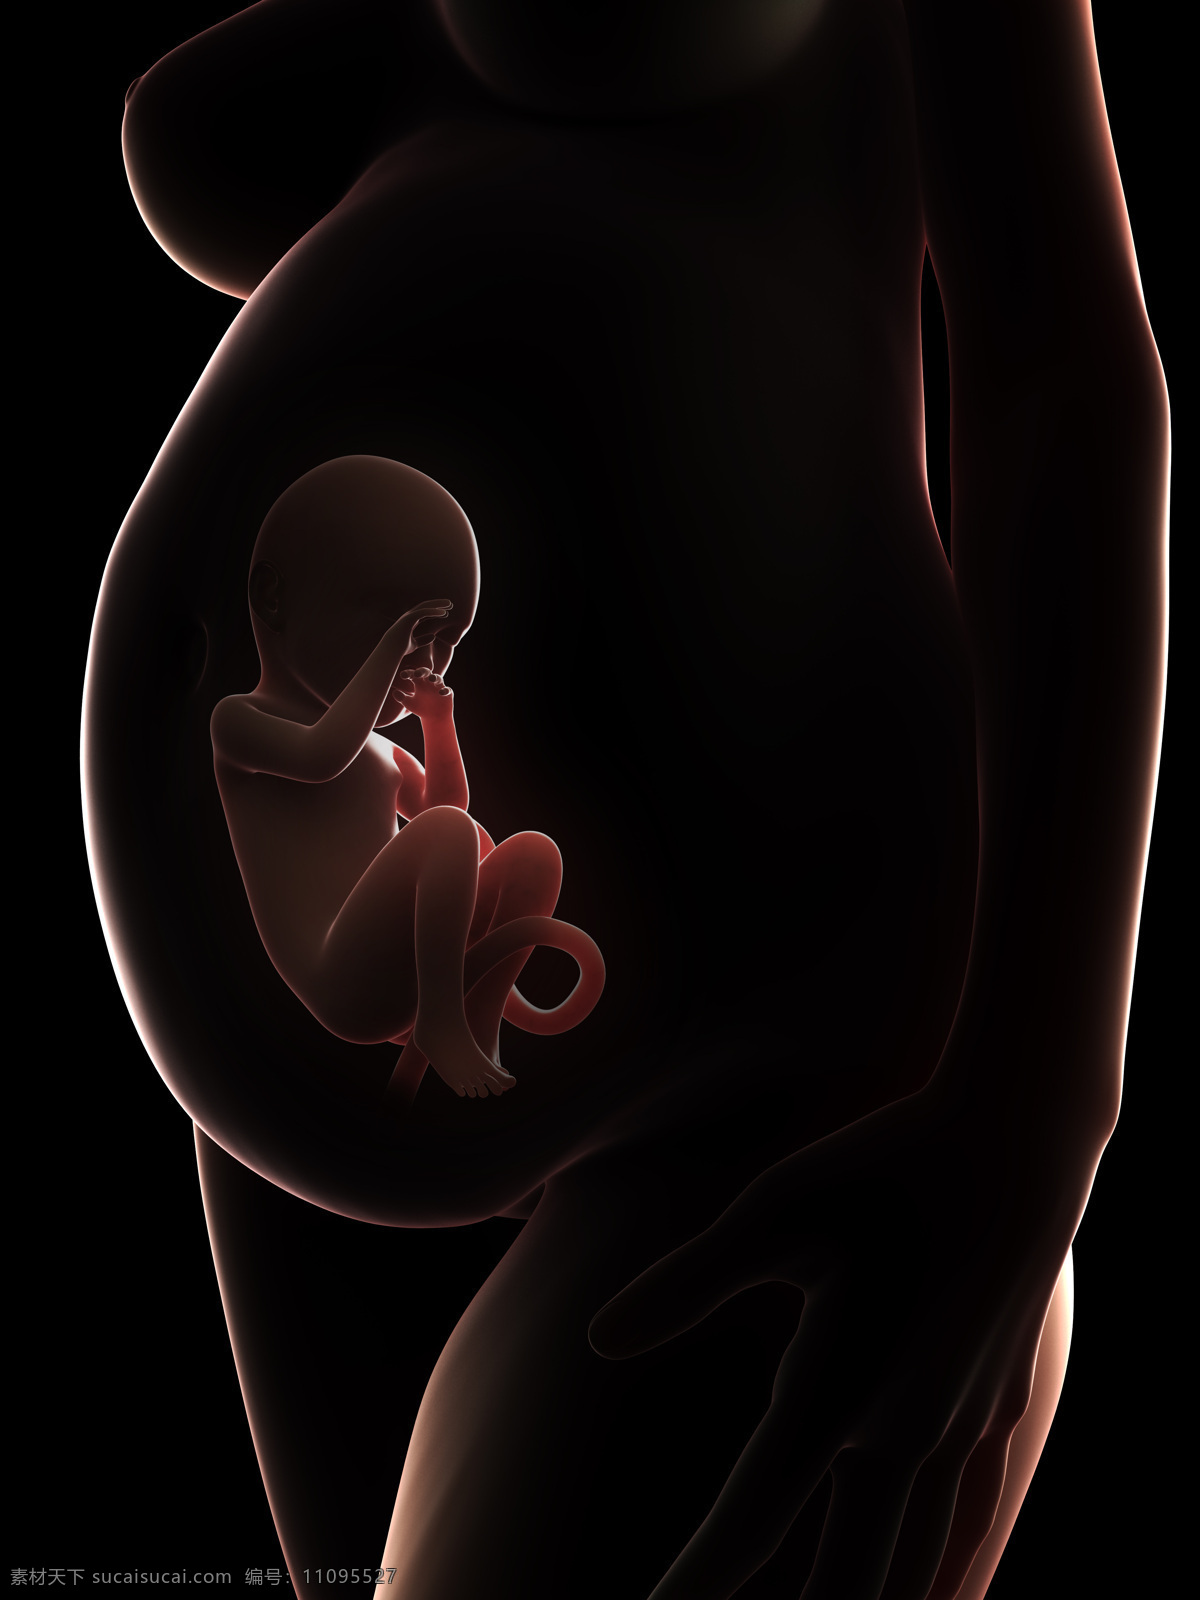 肚子 中 成形 胎儿 孕妇 婴儿 发育 孕育 胚胎发育 儿童图片 人物图片